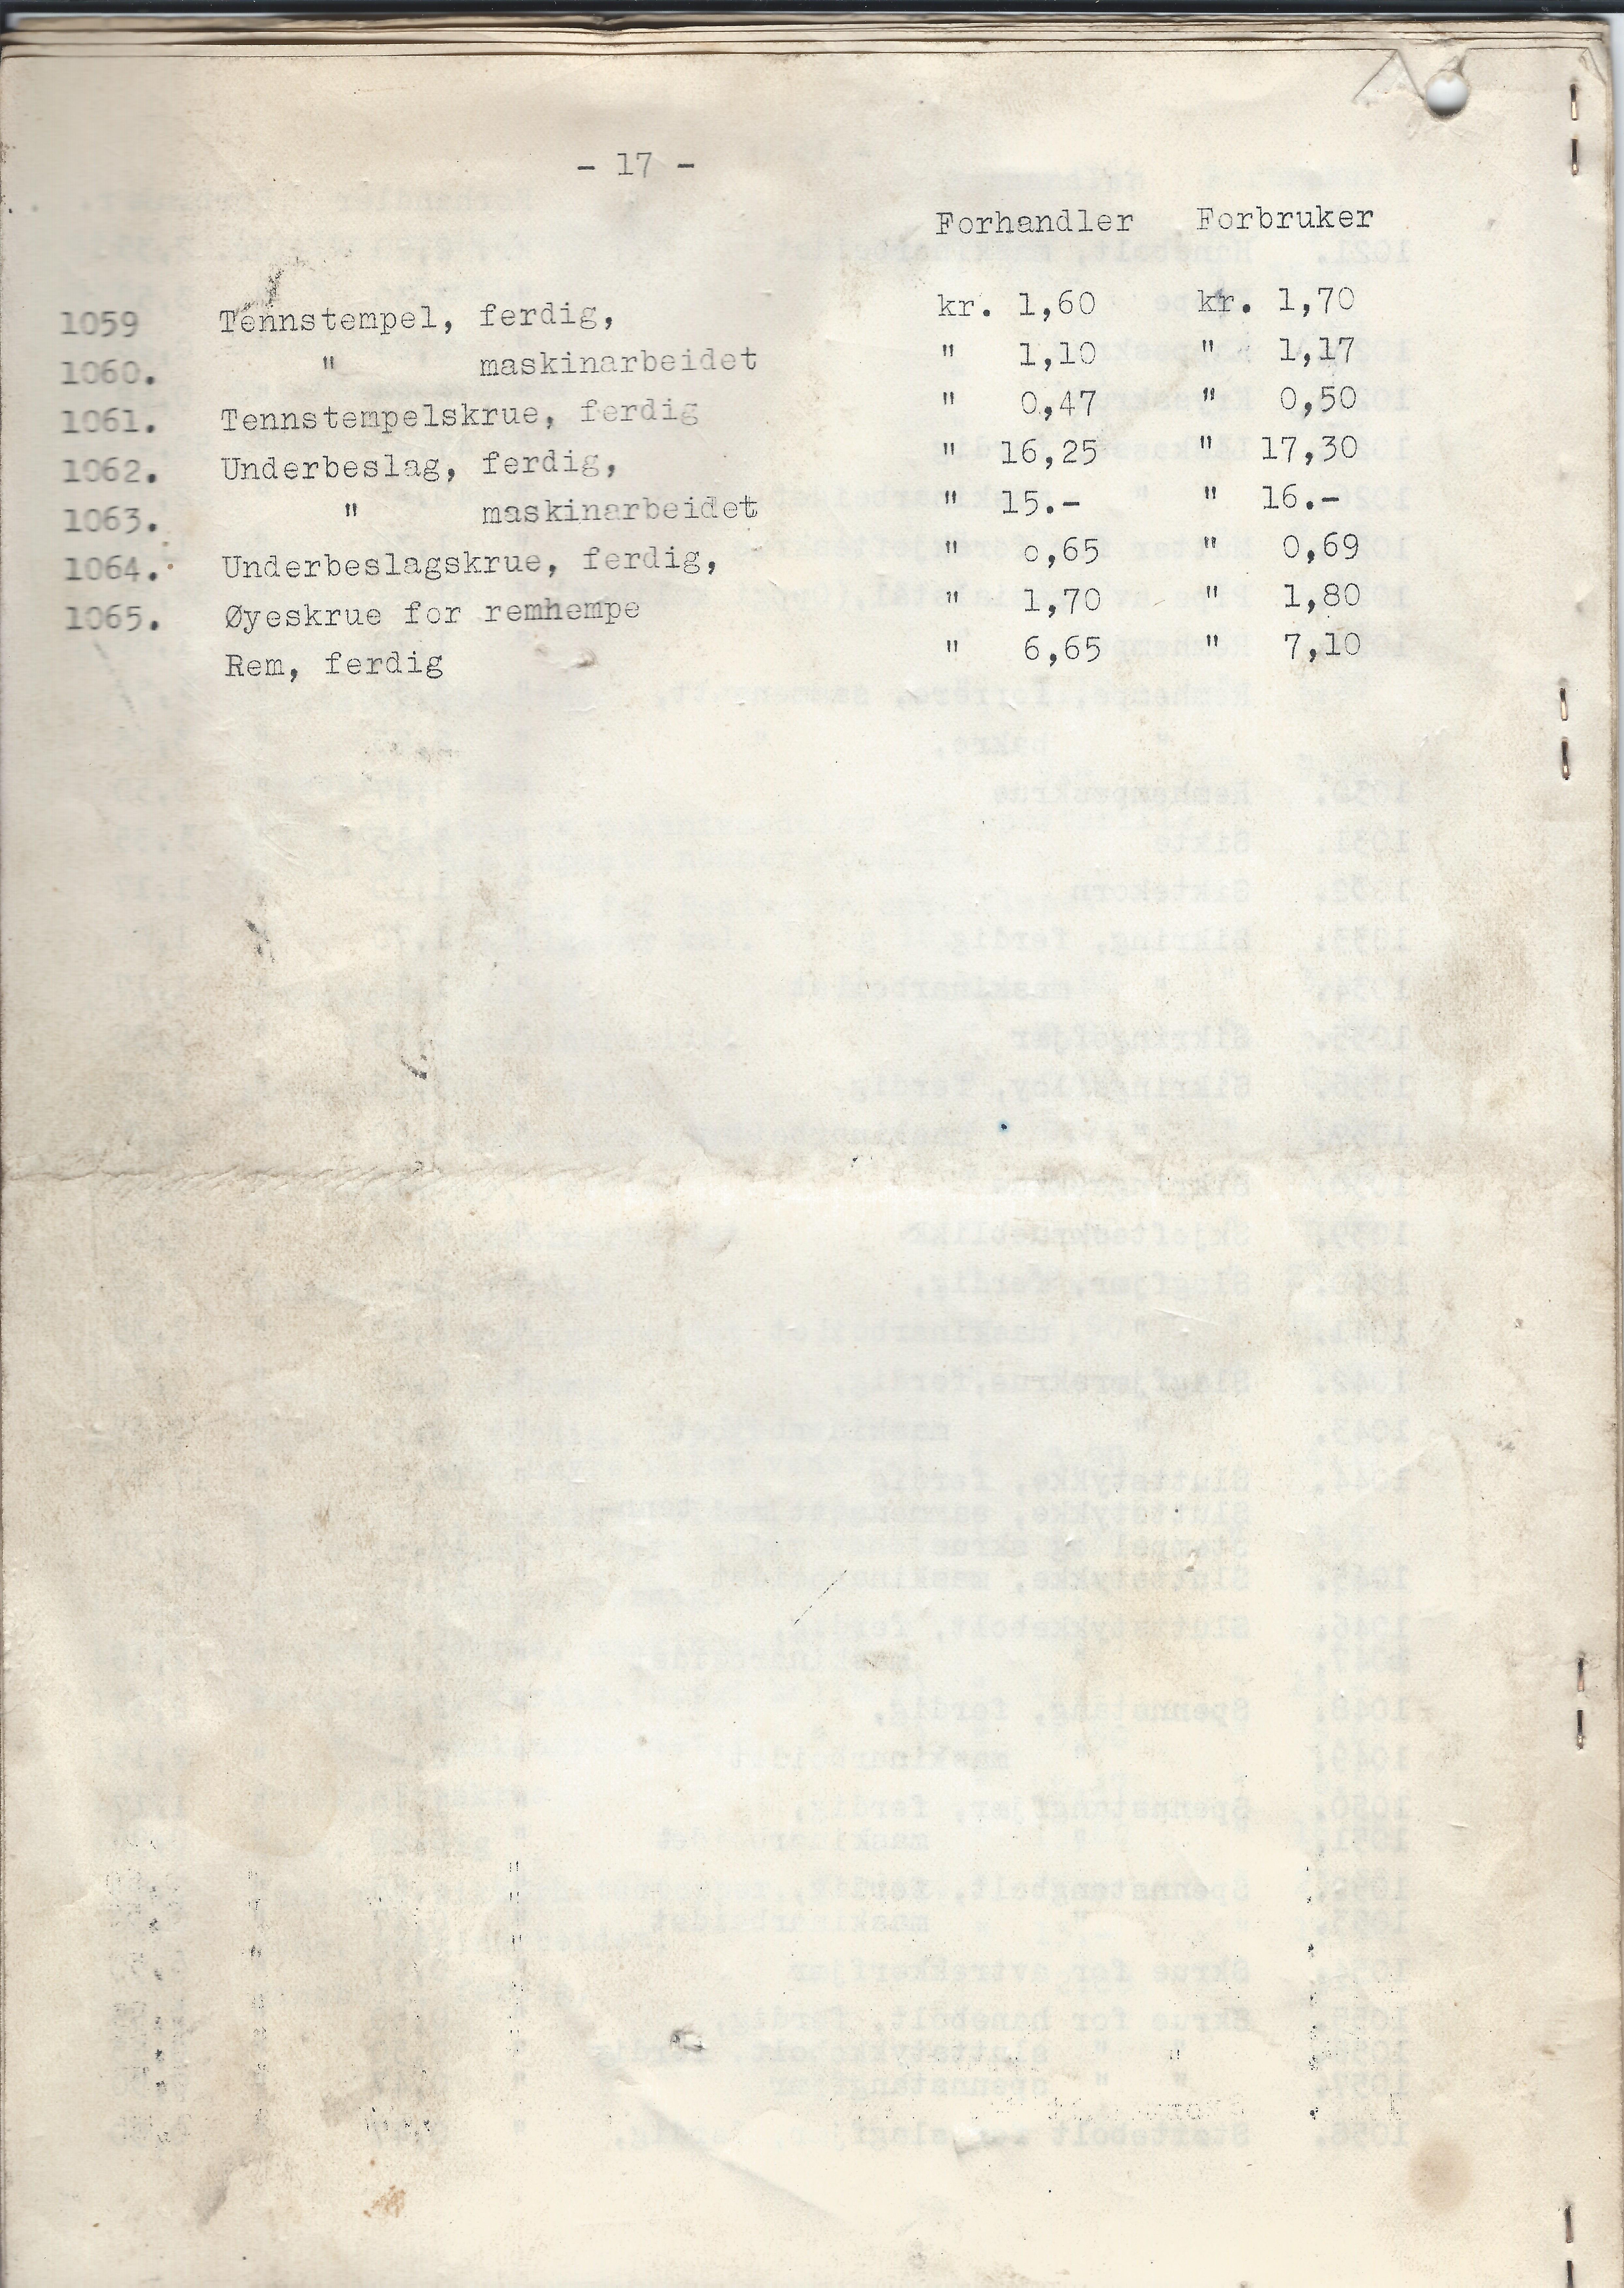 ./doc/KV/KV-Prisliste-Deler-Nr15-September-1948-18.jpg